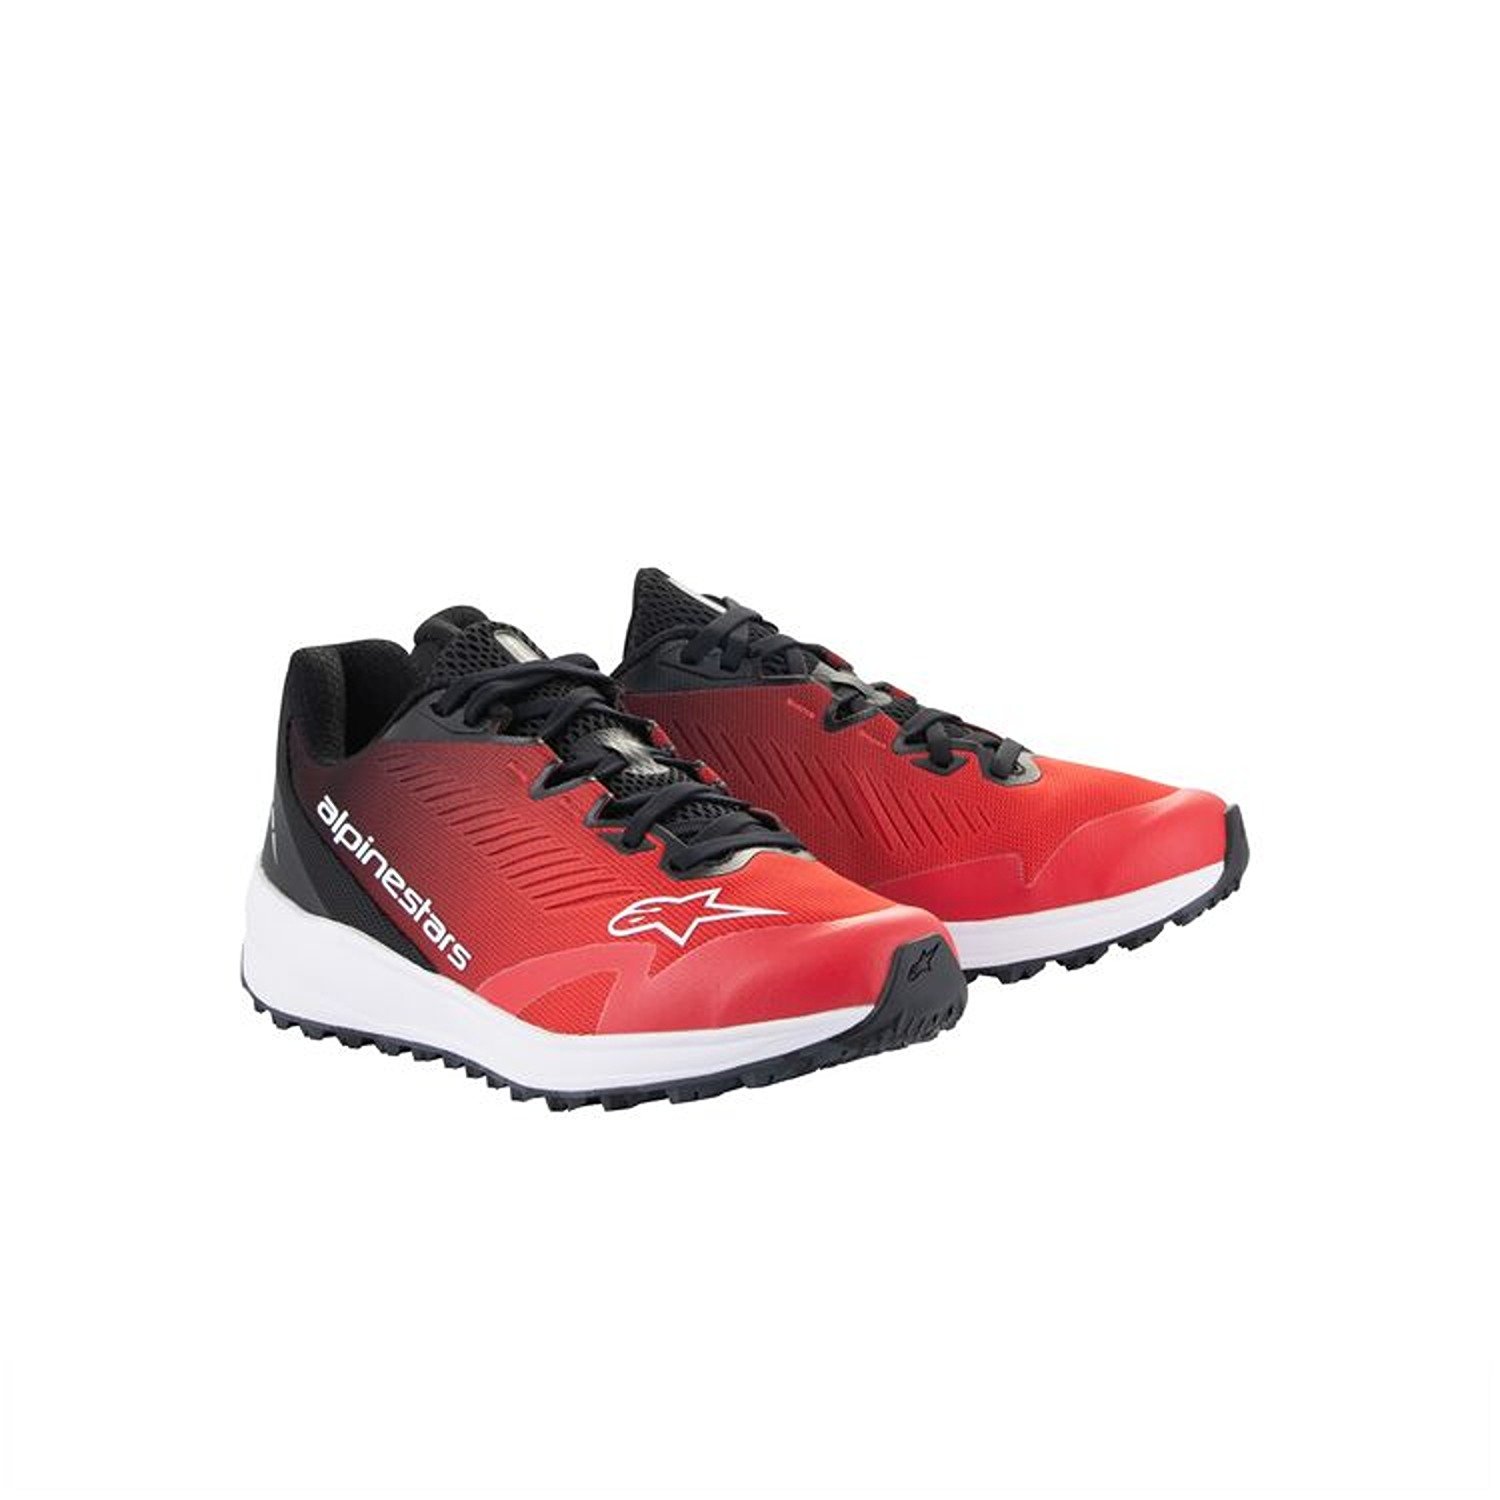 Image of Alpinestars Meta Road V2 Shoes Red Black White Größe US 11